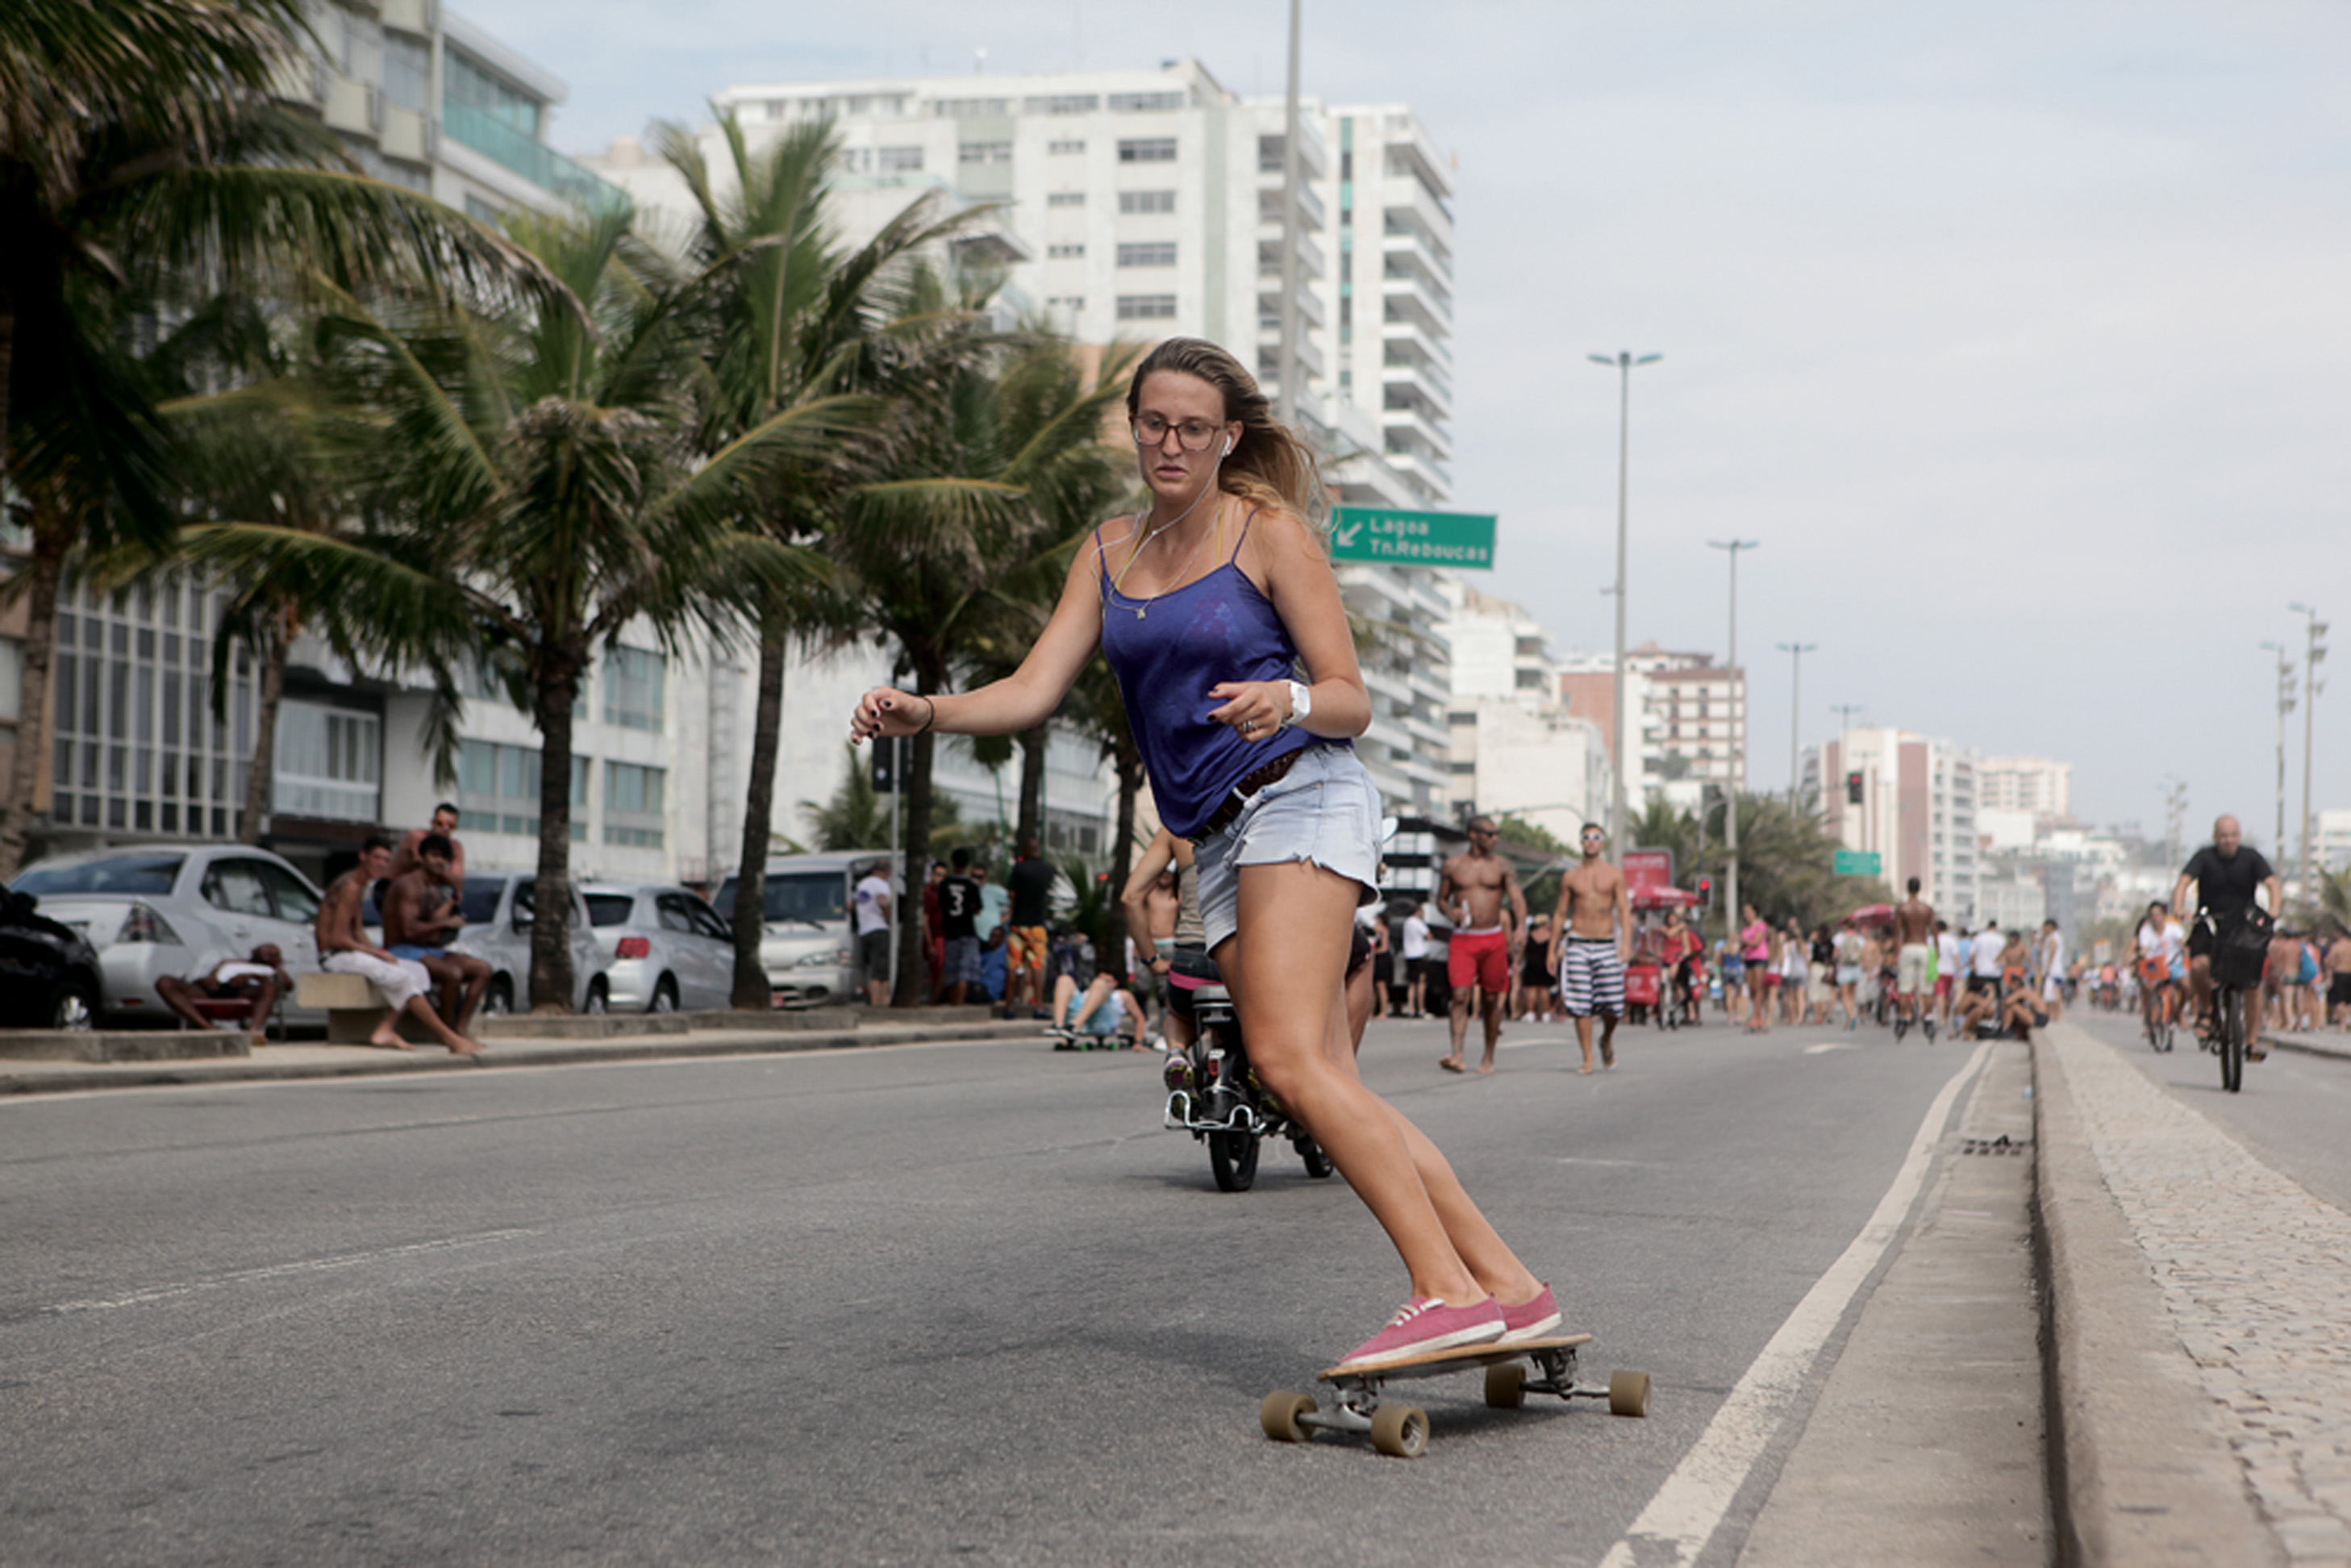 Alice Alvarenga, 19 anos, estudante, usa Skate tradicional. “Tenha calma, comece em pistas planas e aposte num tênis de solado reto.”